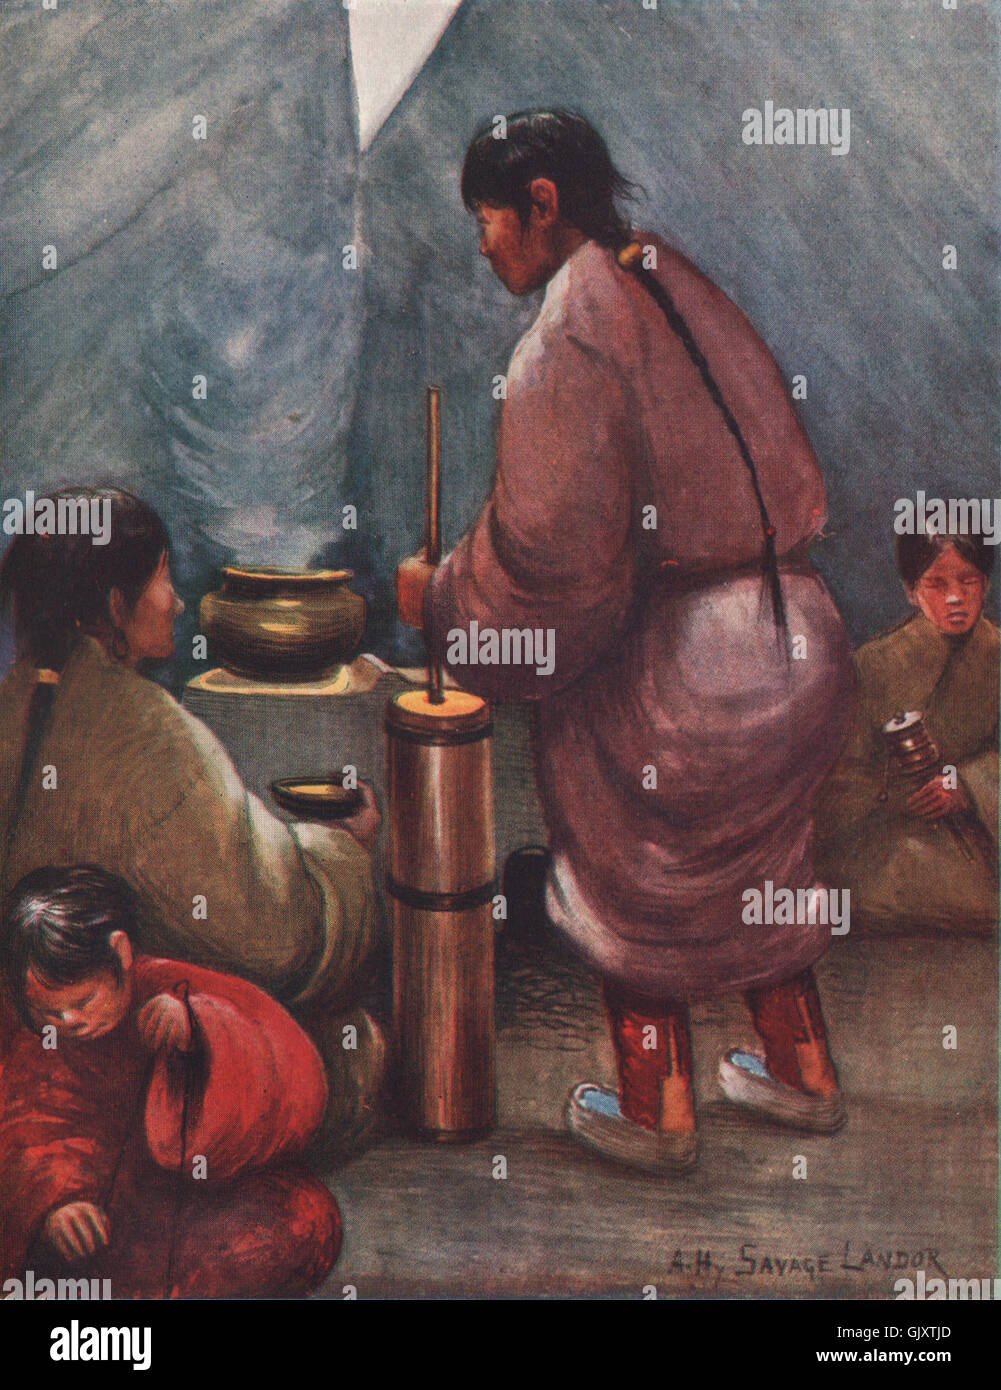 Intérieur d'une tente tibétaine ; mélange thé avec du beurre. A. Henry Savage Landor, 1905 Banque D'Images